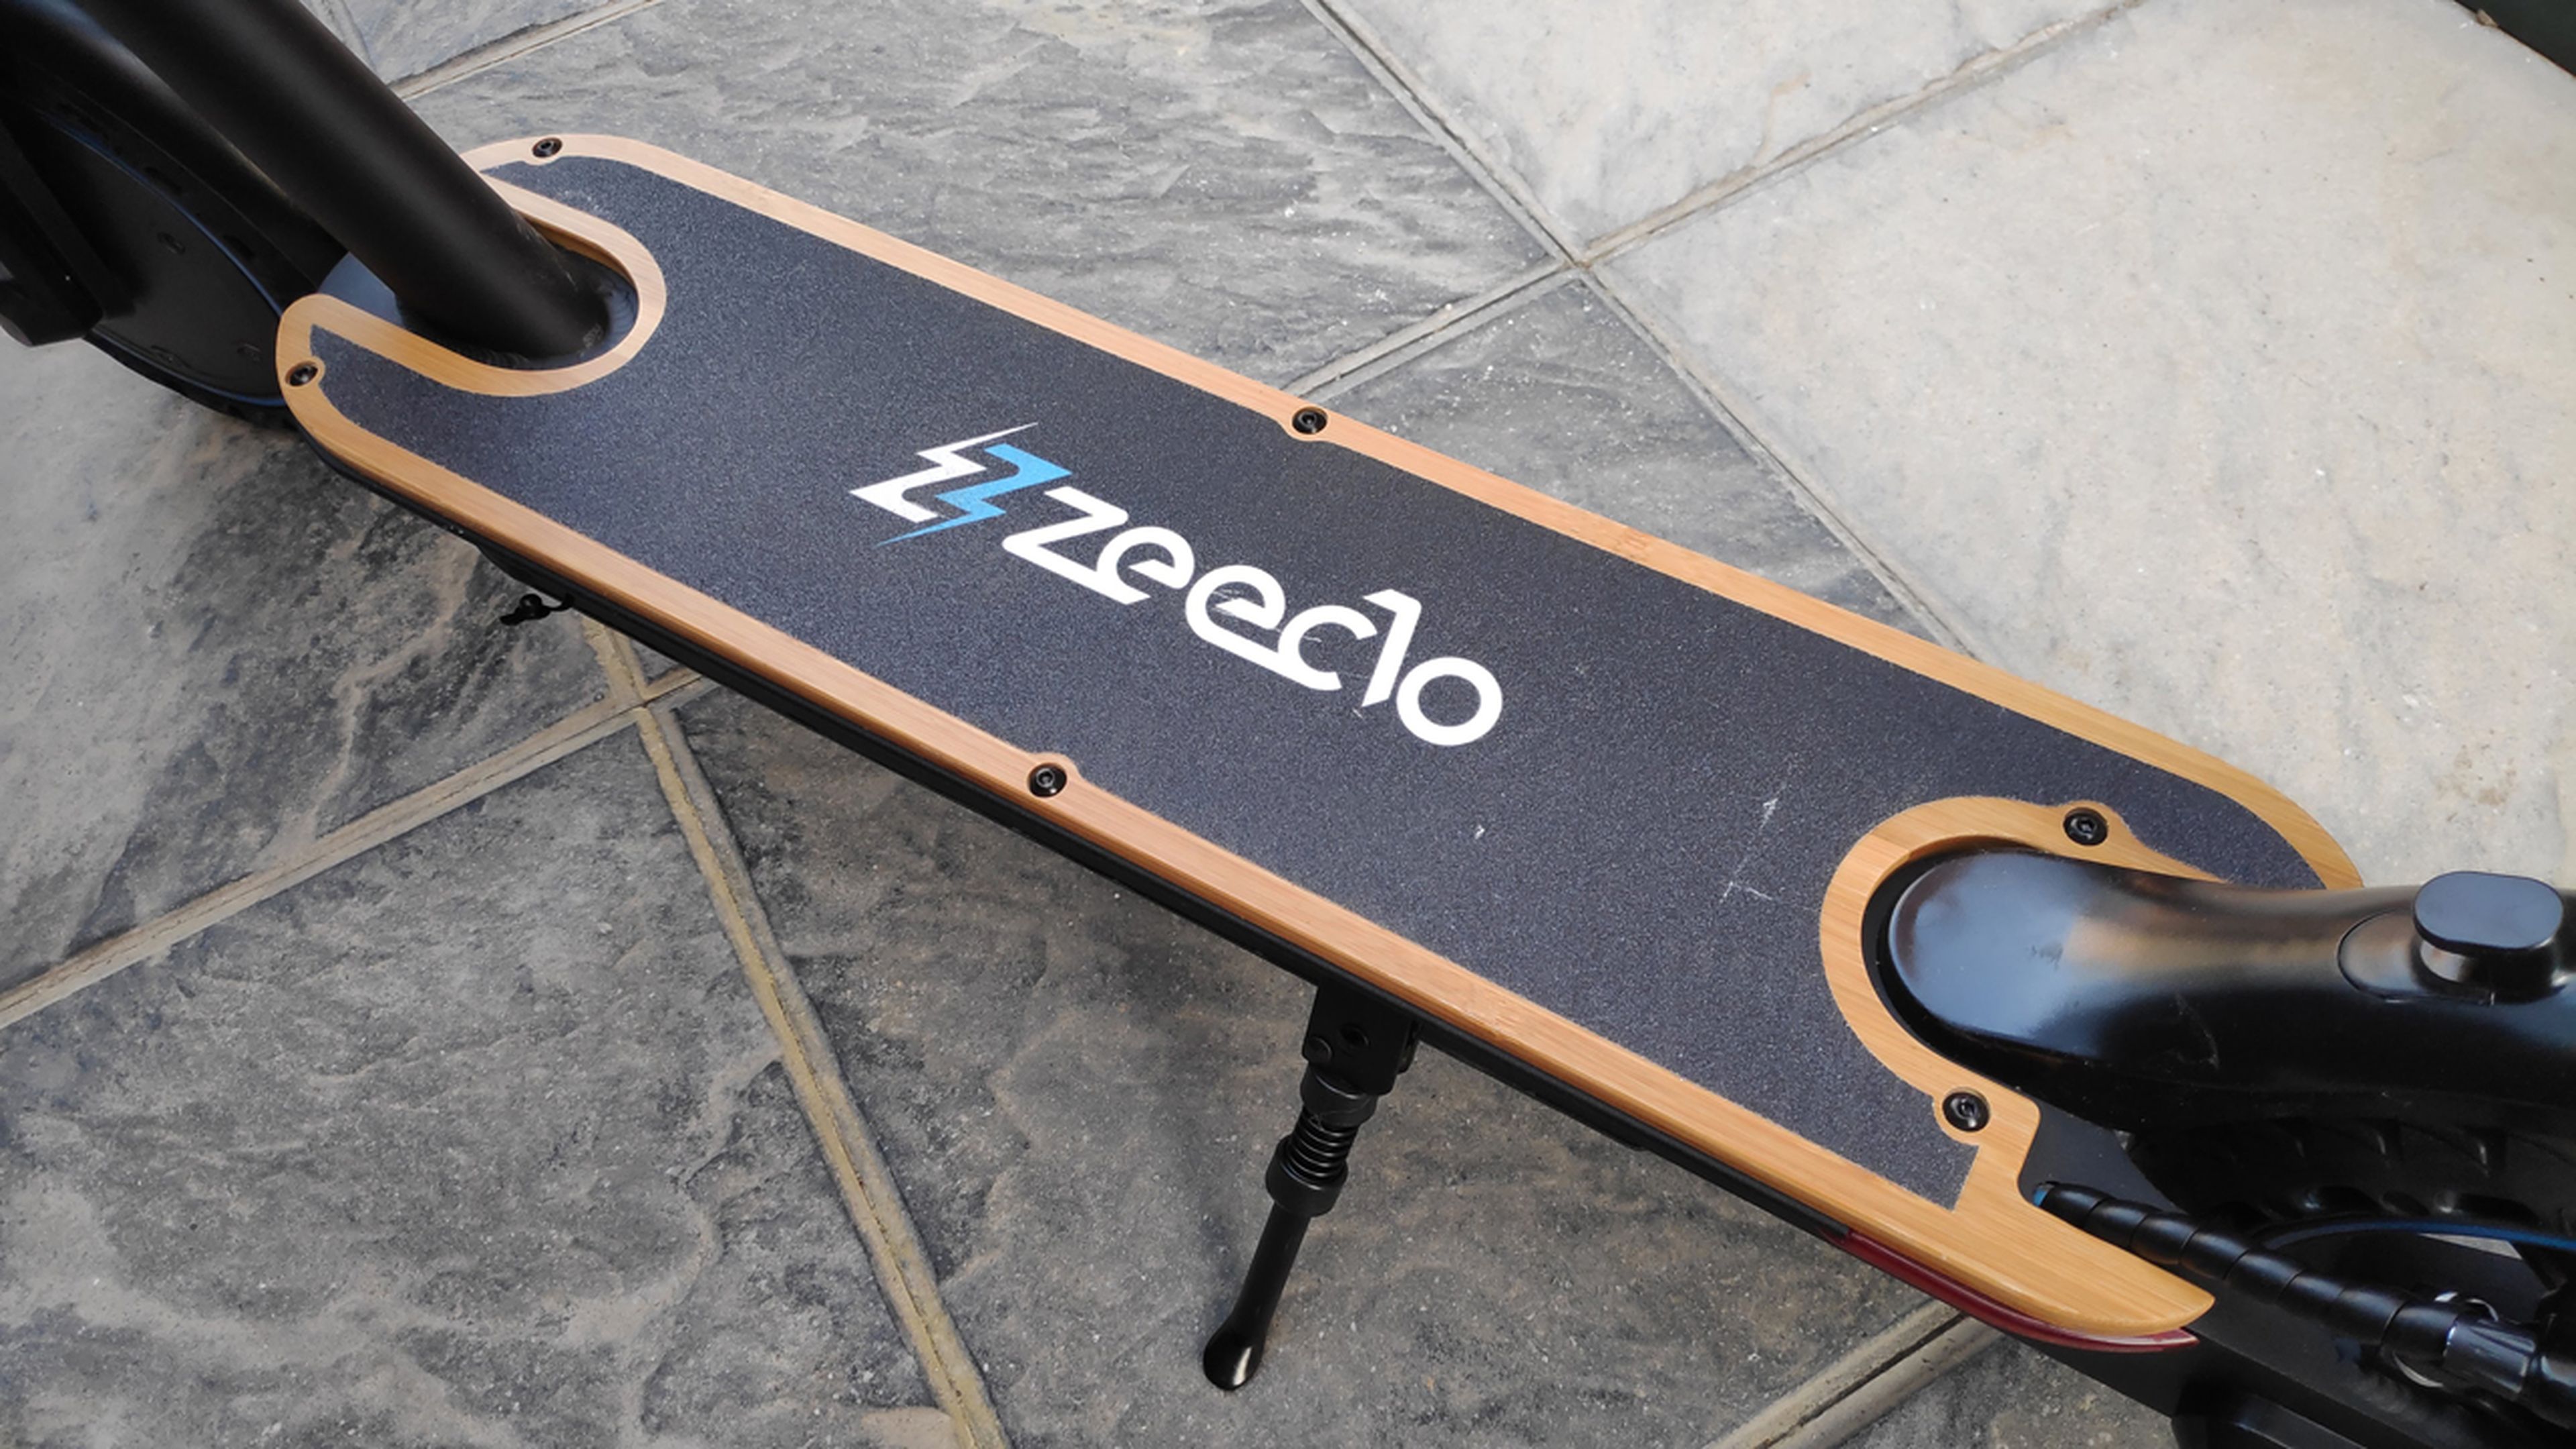 Prueba del patinete eléctrico Zeeclo Géminis, un digno rival del Xiaomi Mi Electric